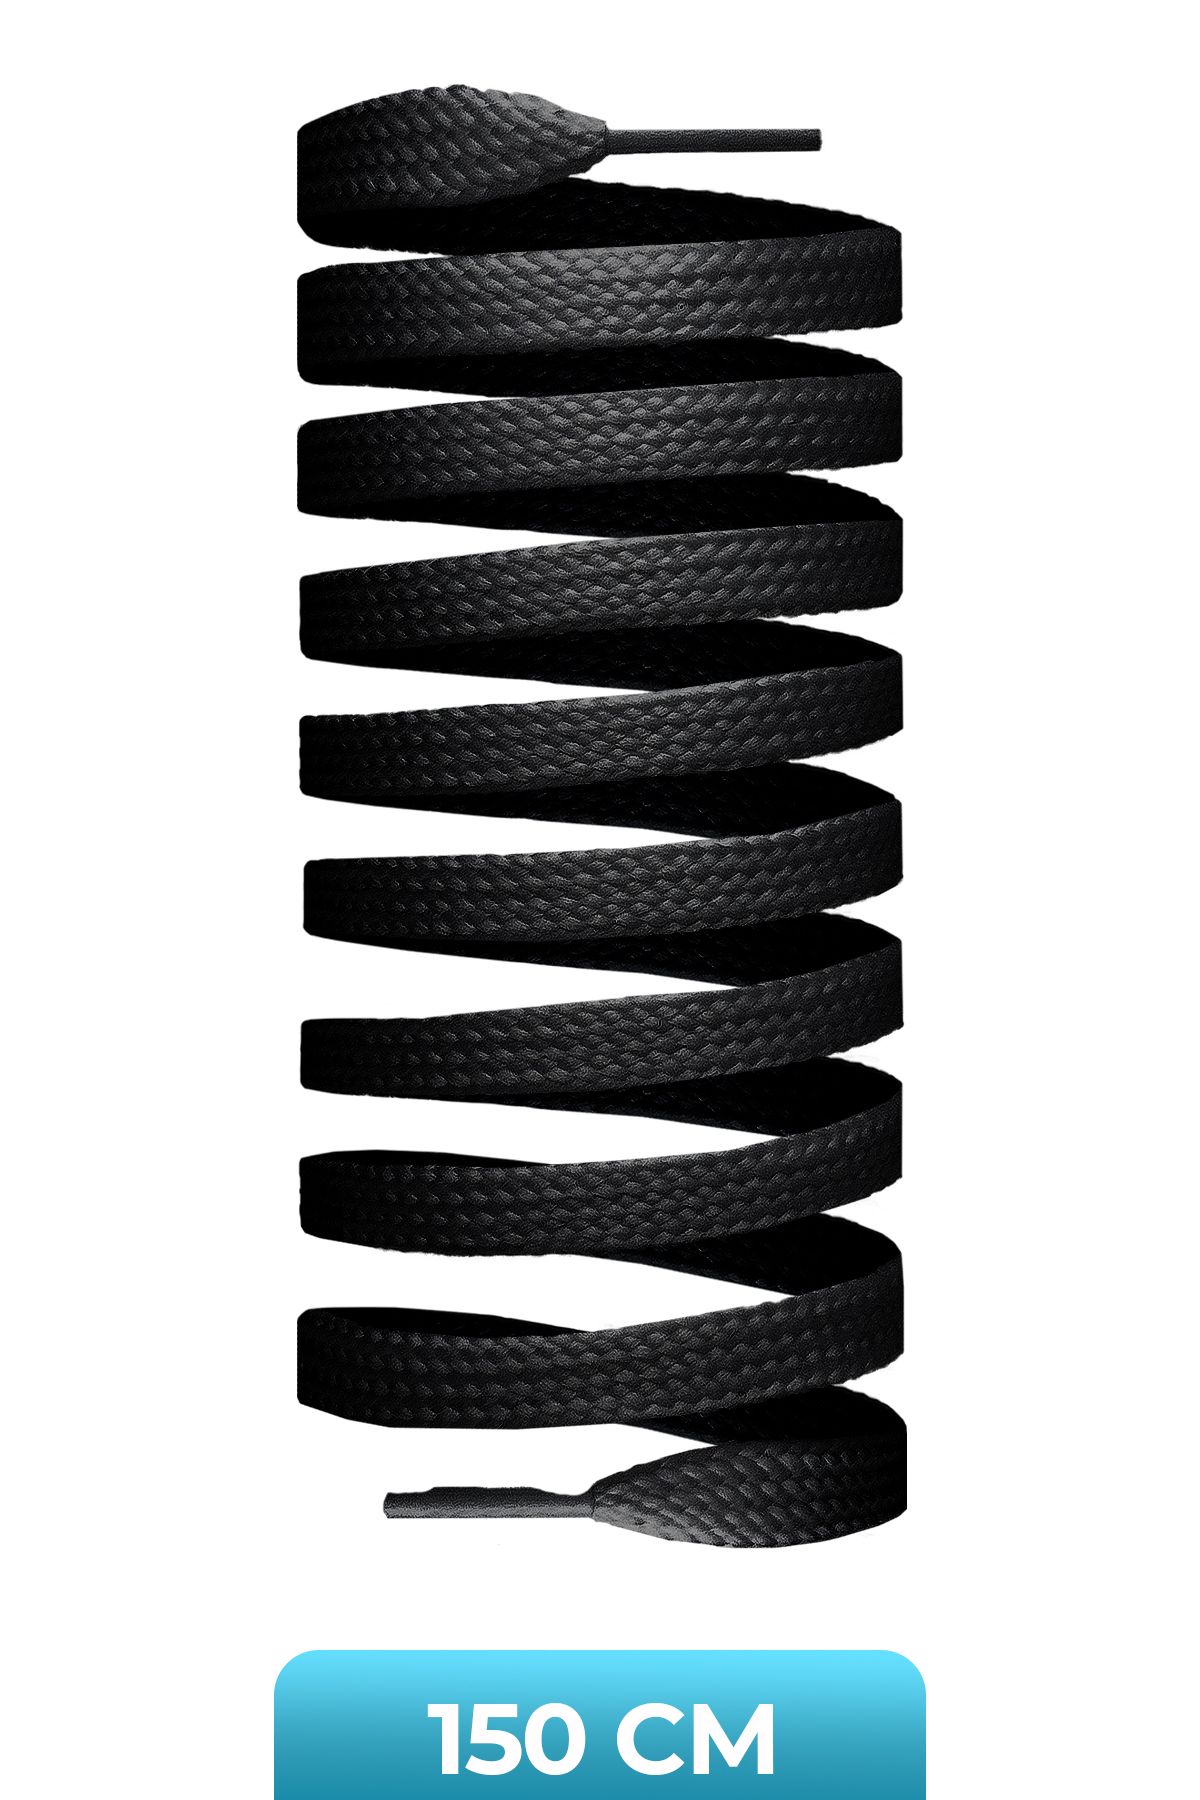 GoLite 150 Cm Yassı Spor Ayakkabı Bağcık , Orijinal Sneakers Bağcığı 1 Çift - Siyah